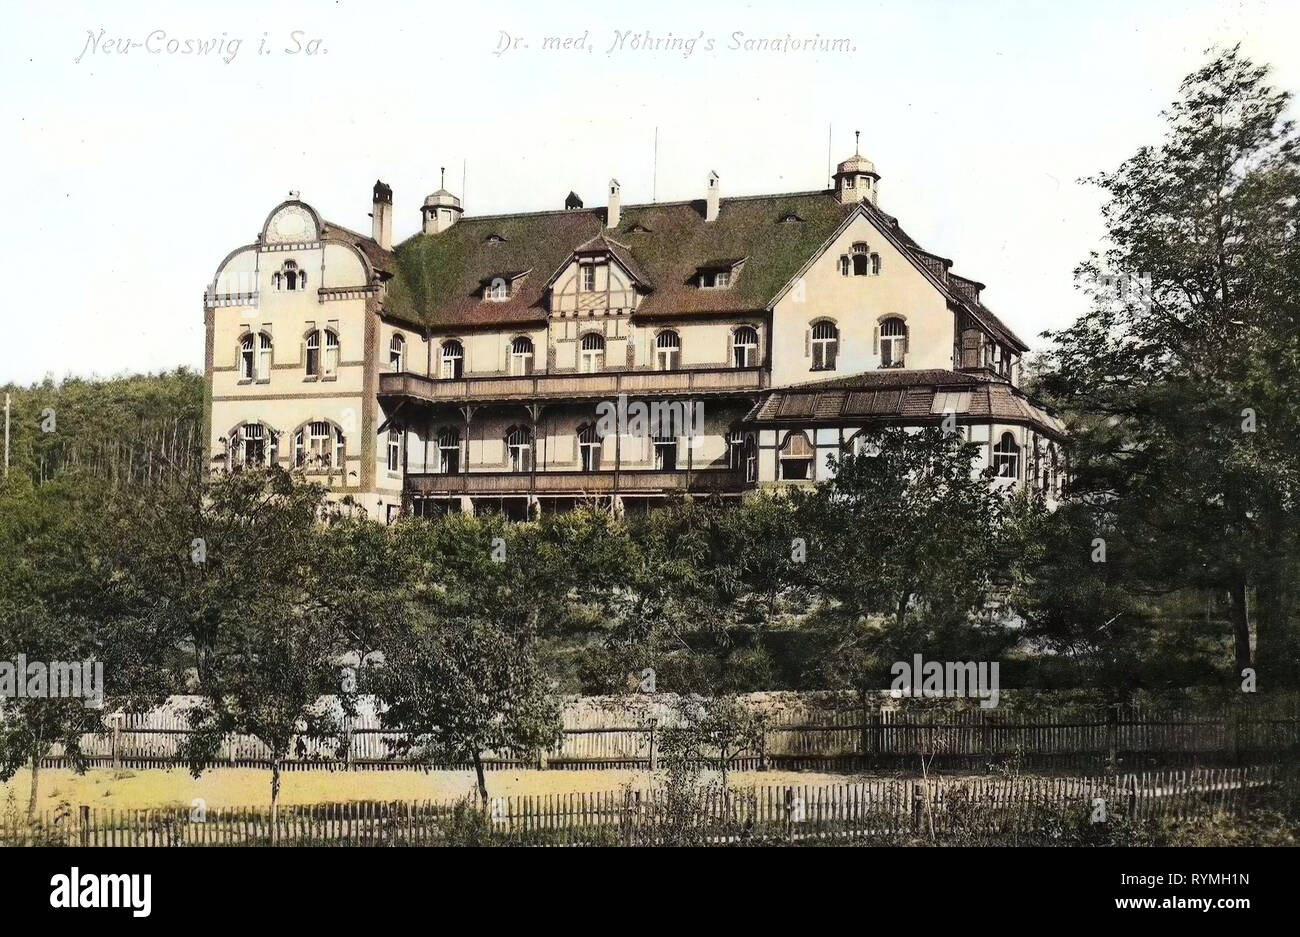 Spa buildings in Saxony, Buildings in Coswig, 1908, Landkreis Meißen, Coswig, Dr. med. Nöhrings, Sanatorium, Germany Stock Photo